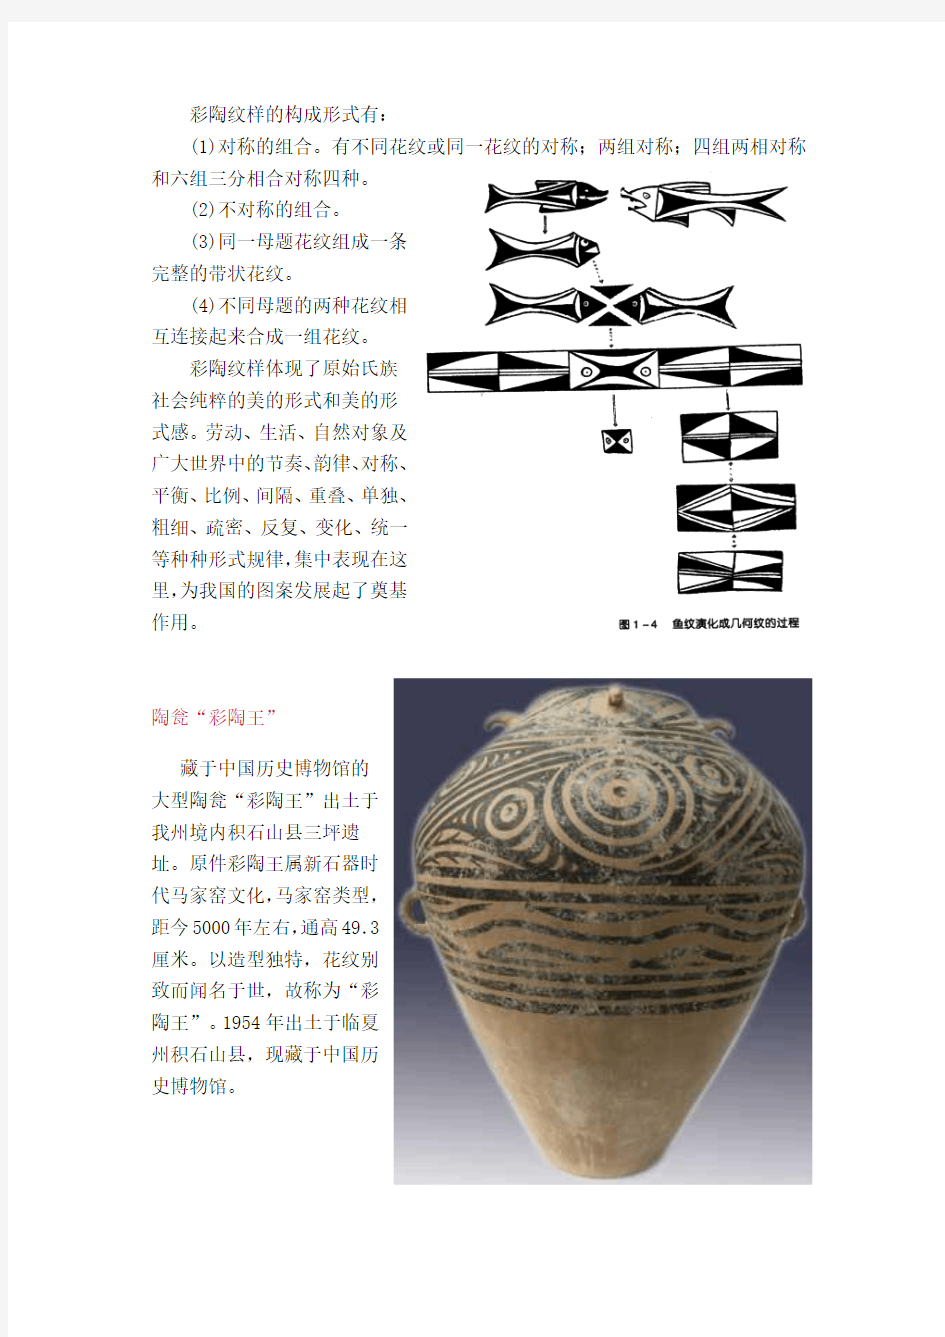 中国原始社会的彩陶图案